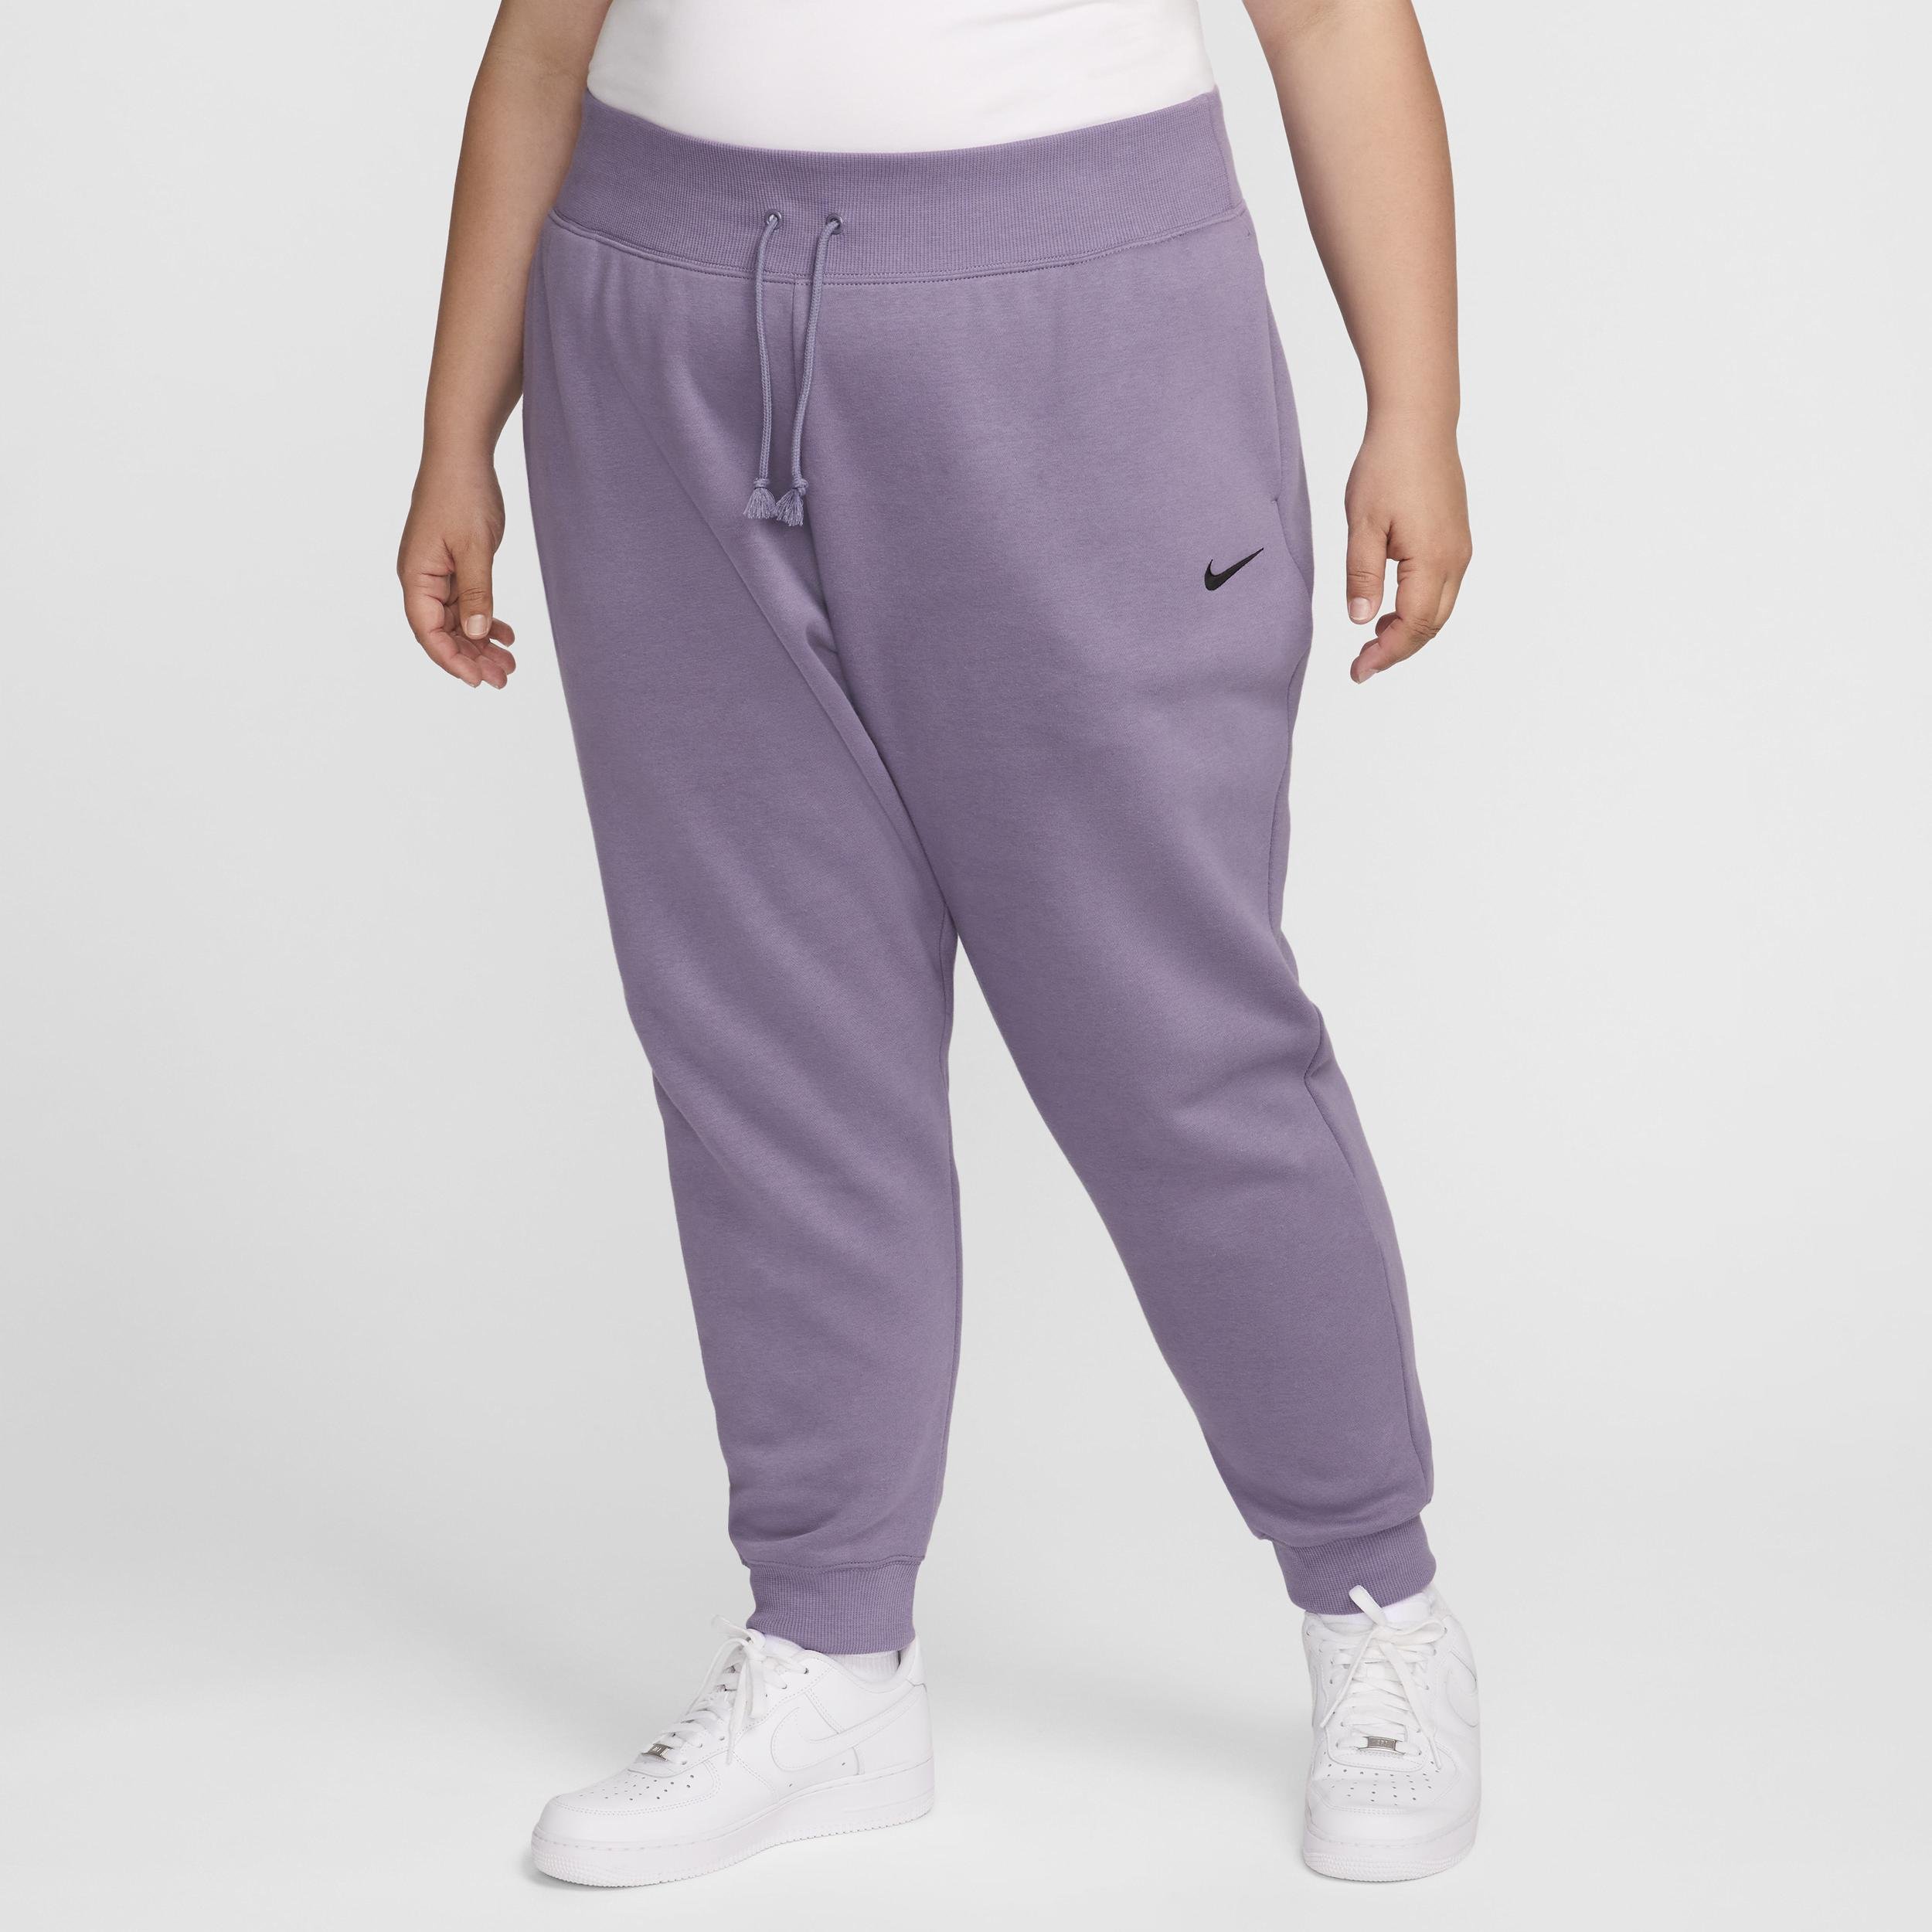 Women's Nike Sportswear Phoenix Fleece High-Waisted Jogger Pants (Plus Size) by NIKE